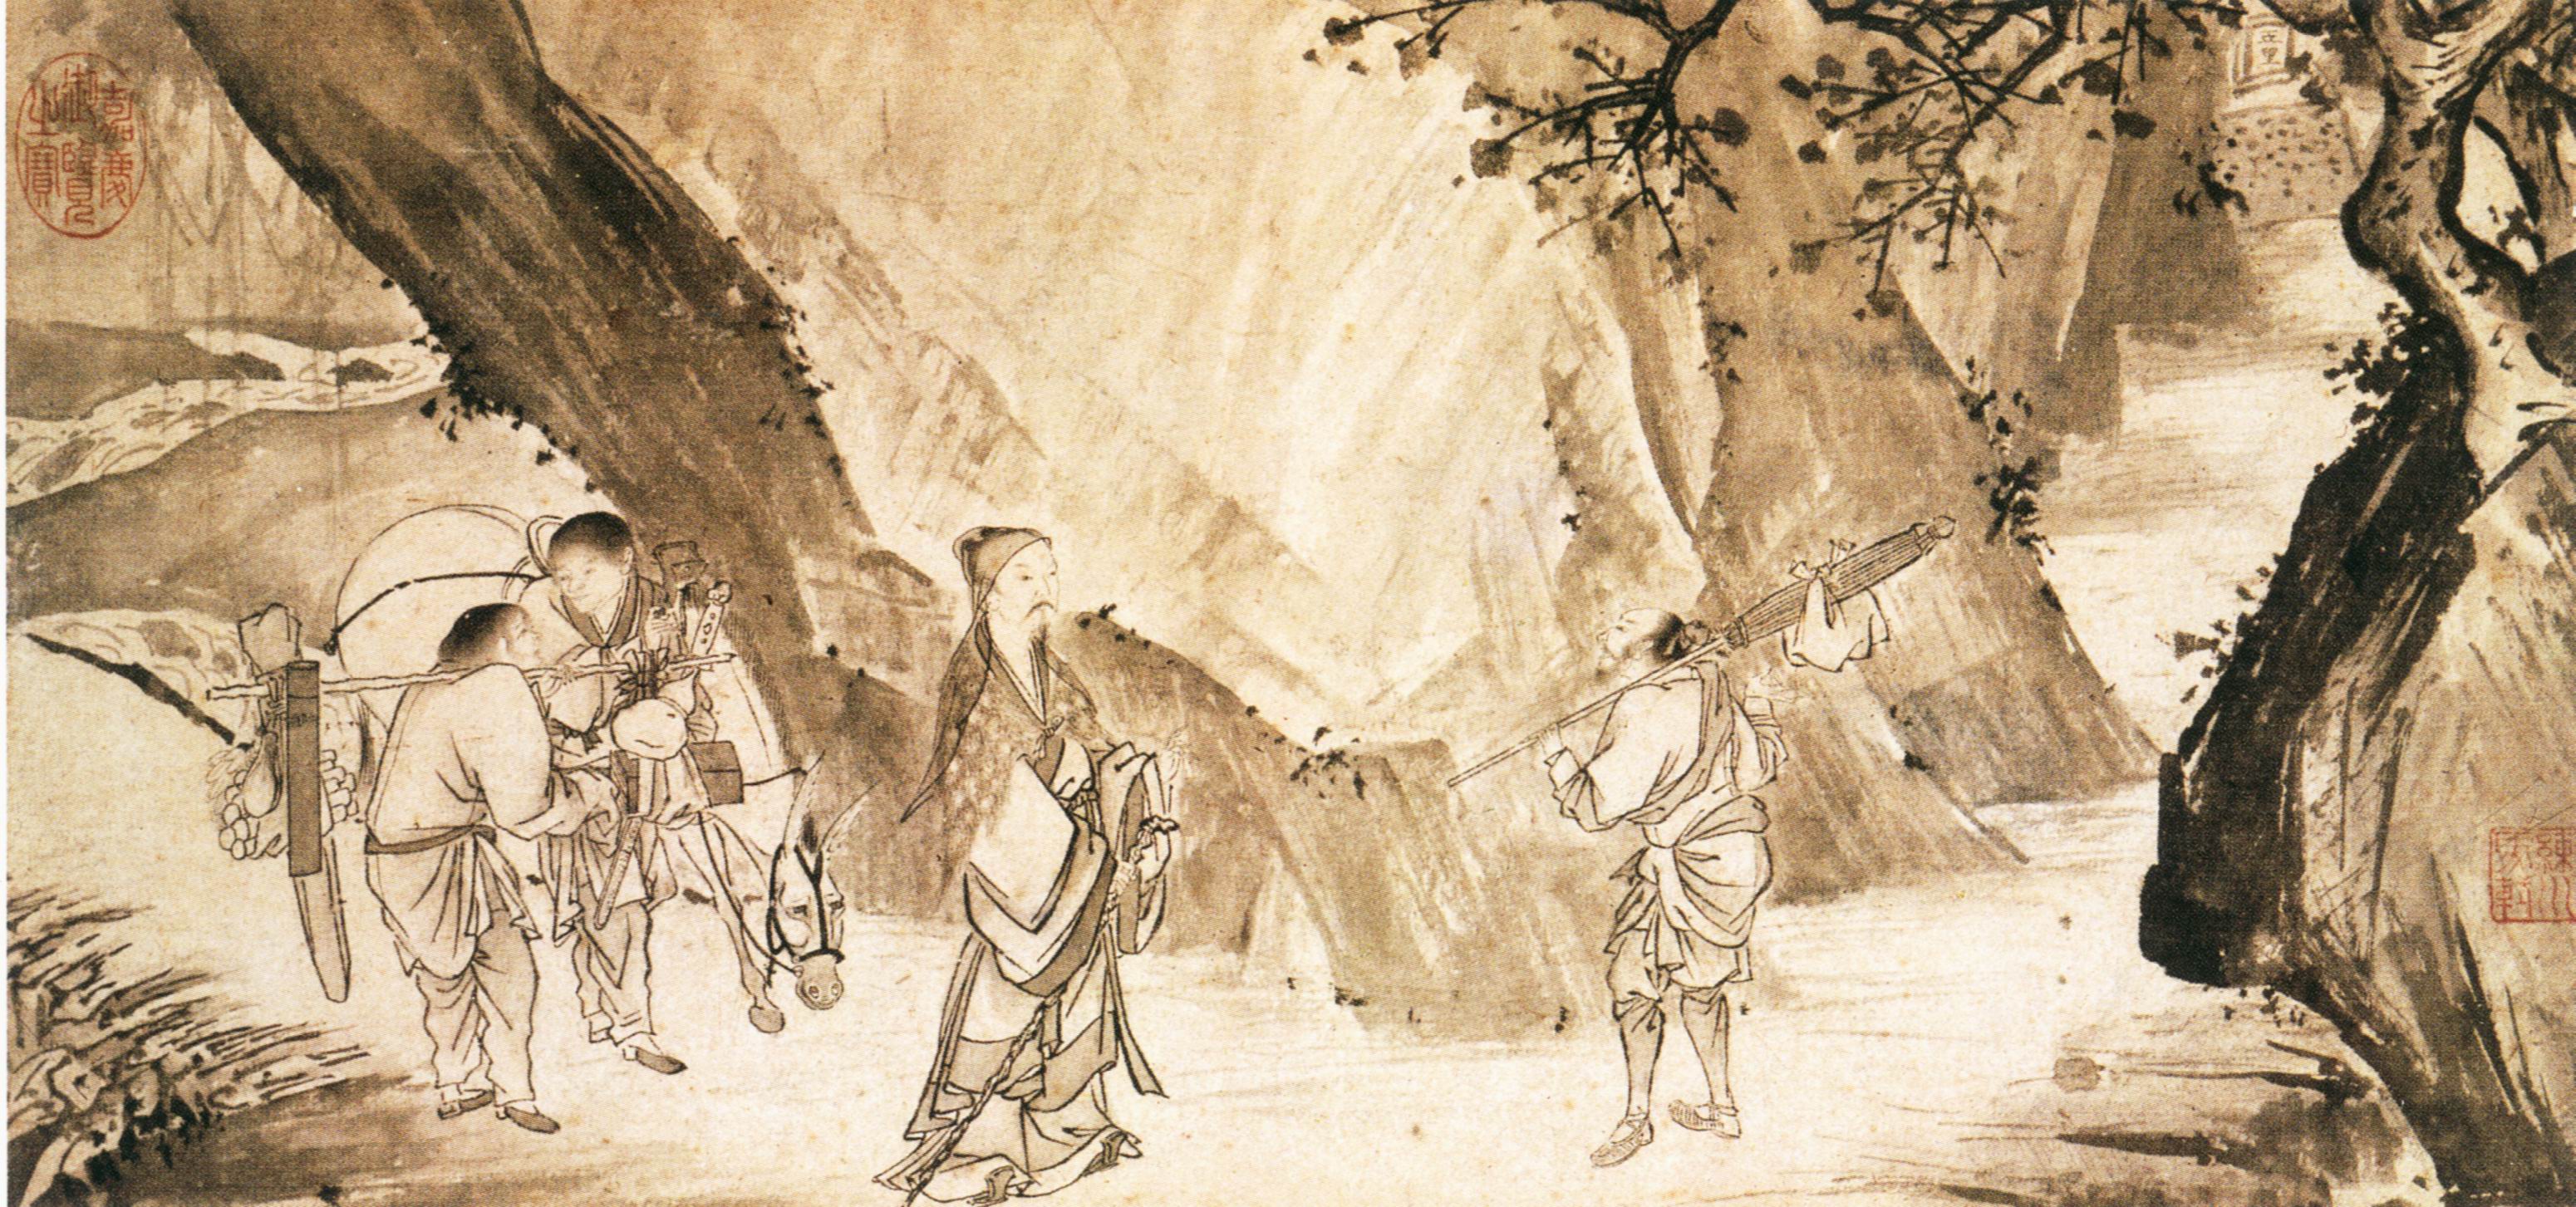 Китайская живопись периода неолита